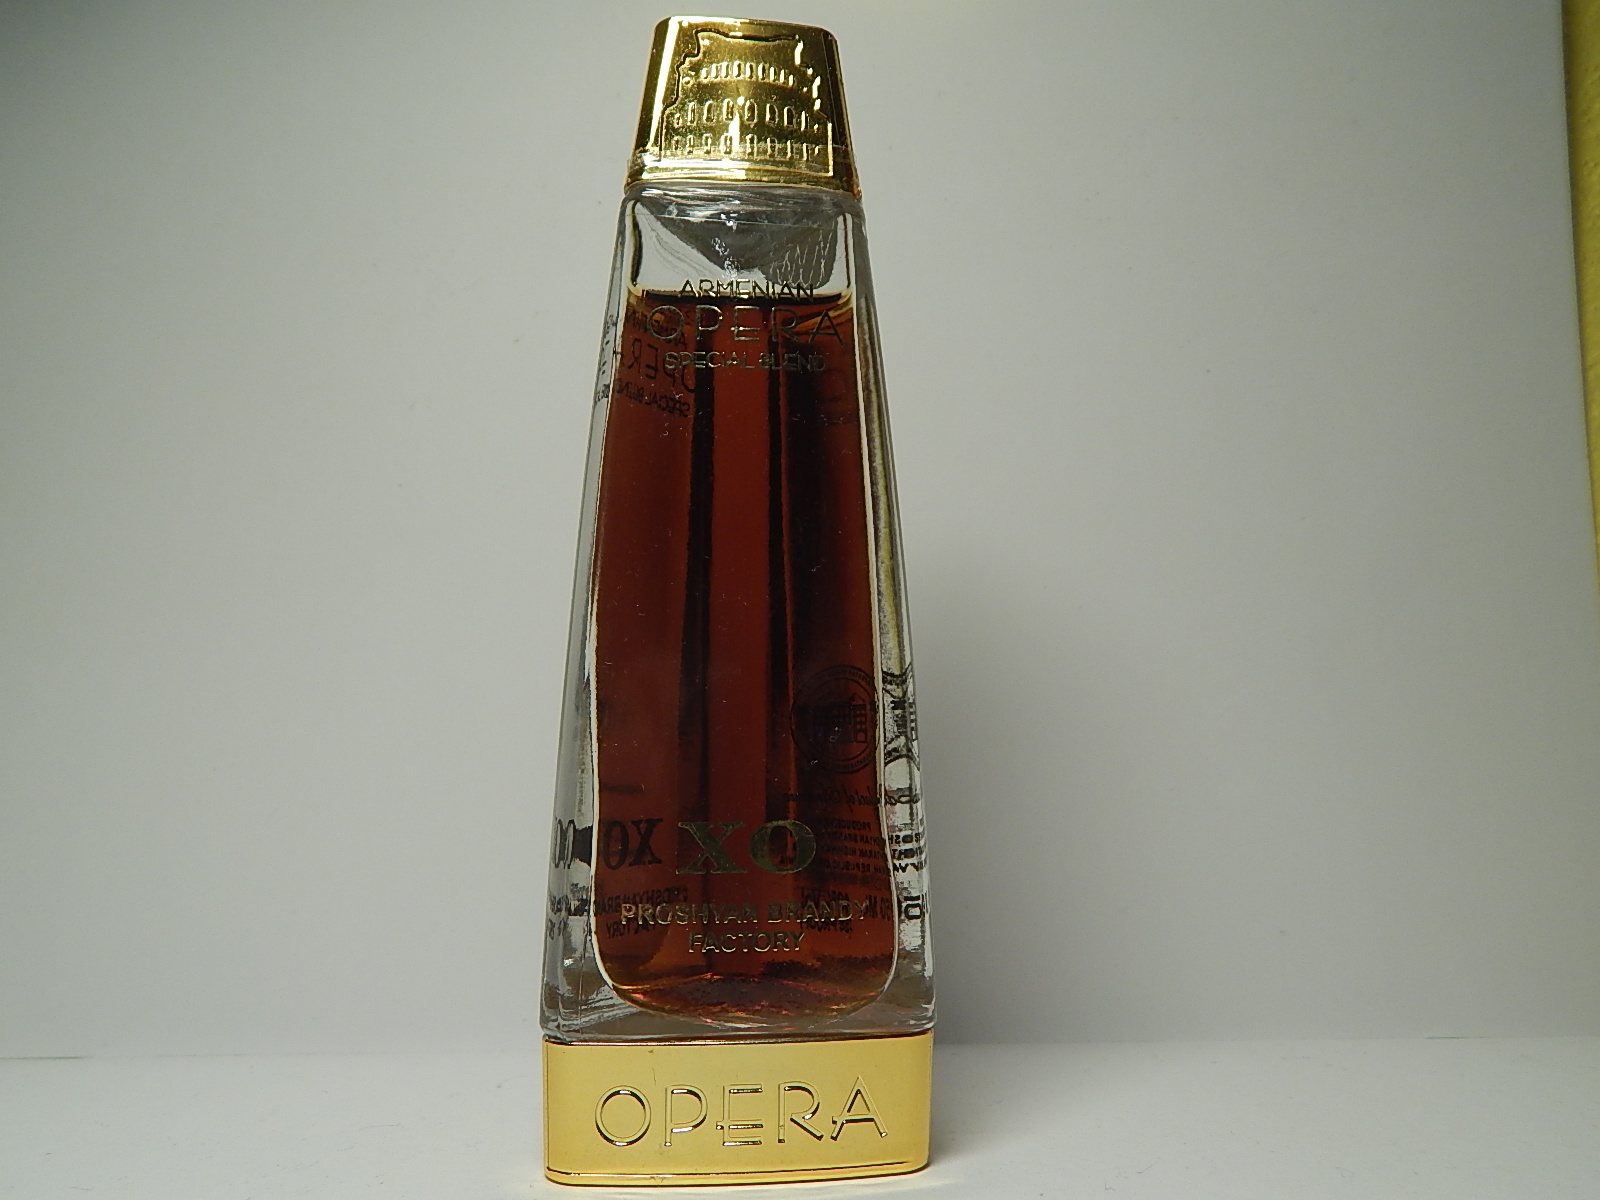 OPERA XO Cognac "Armenia"